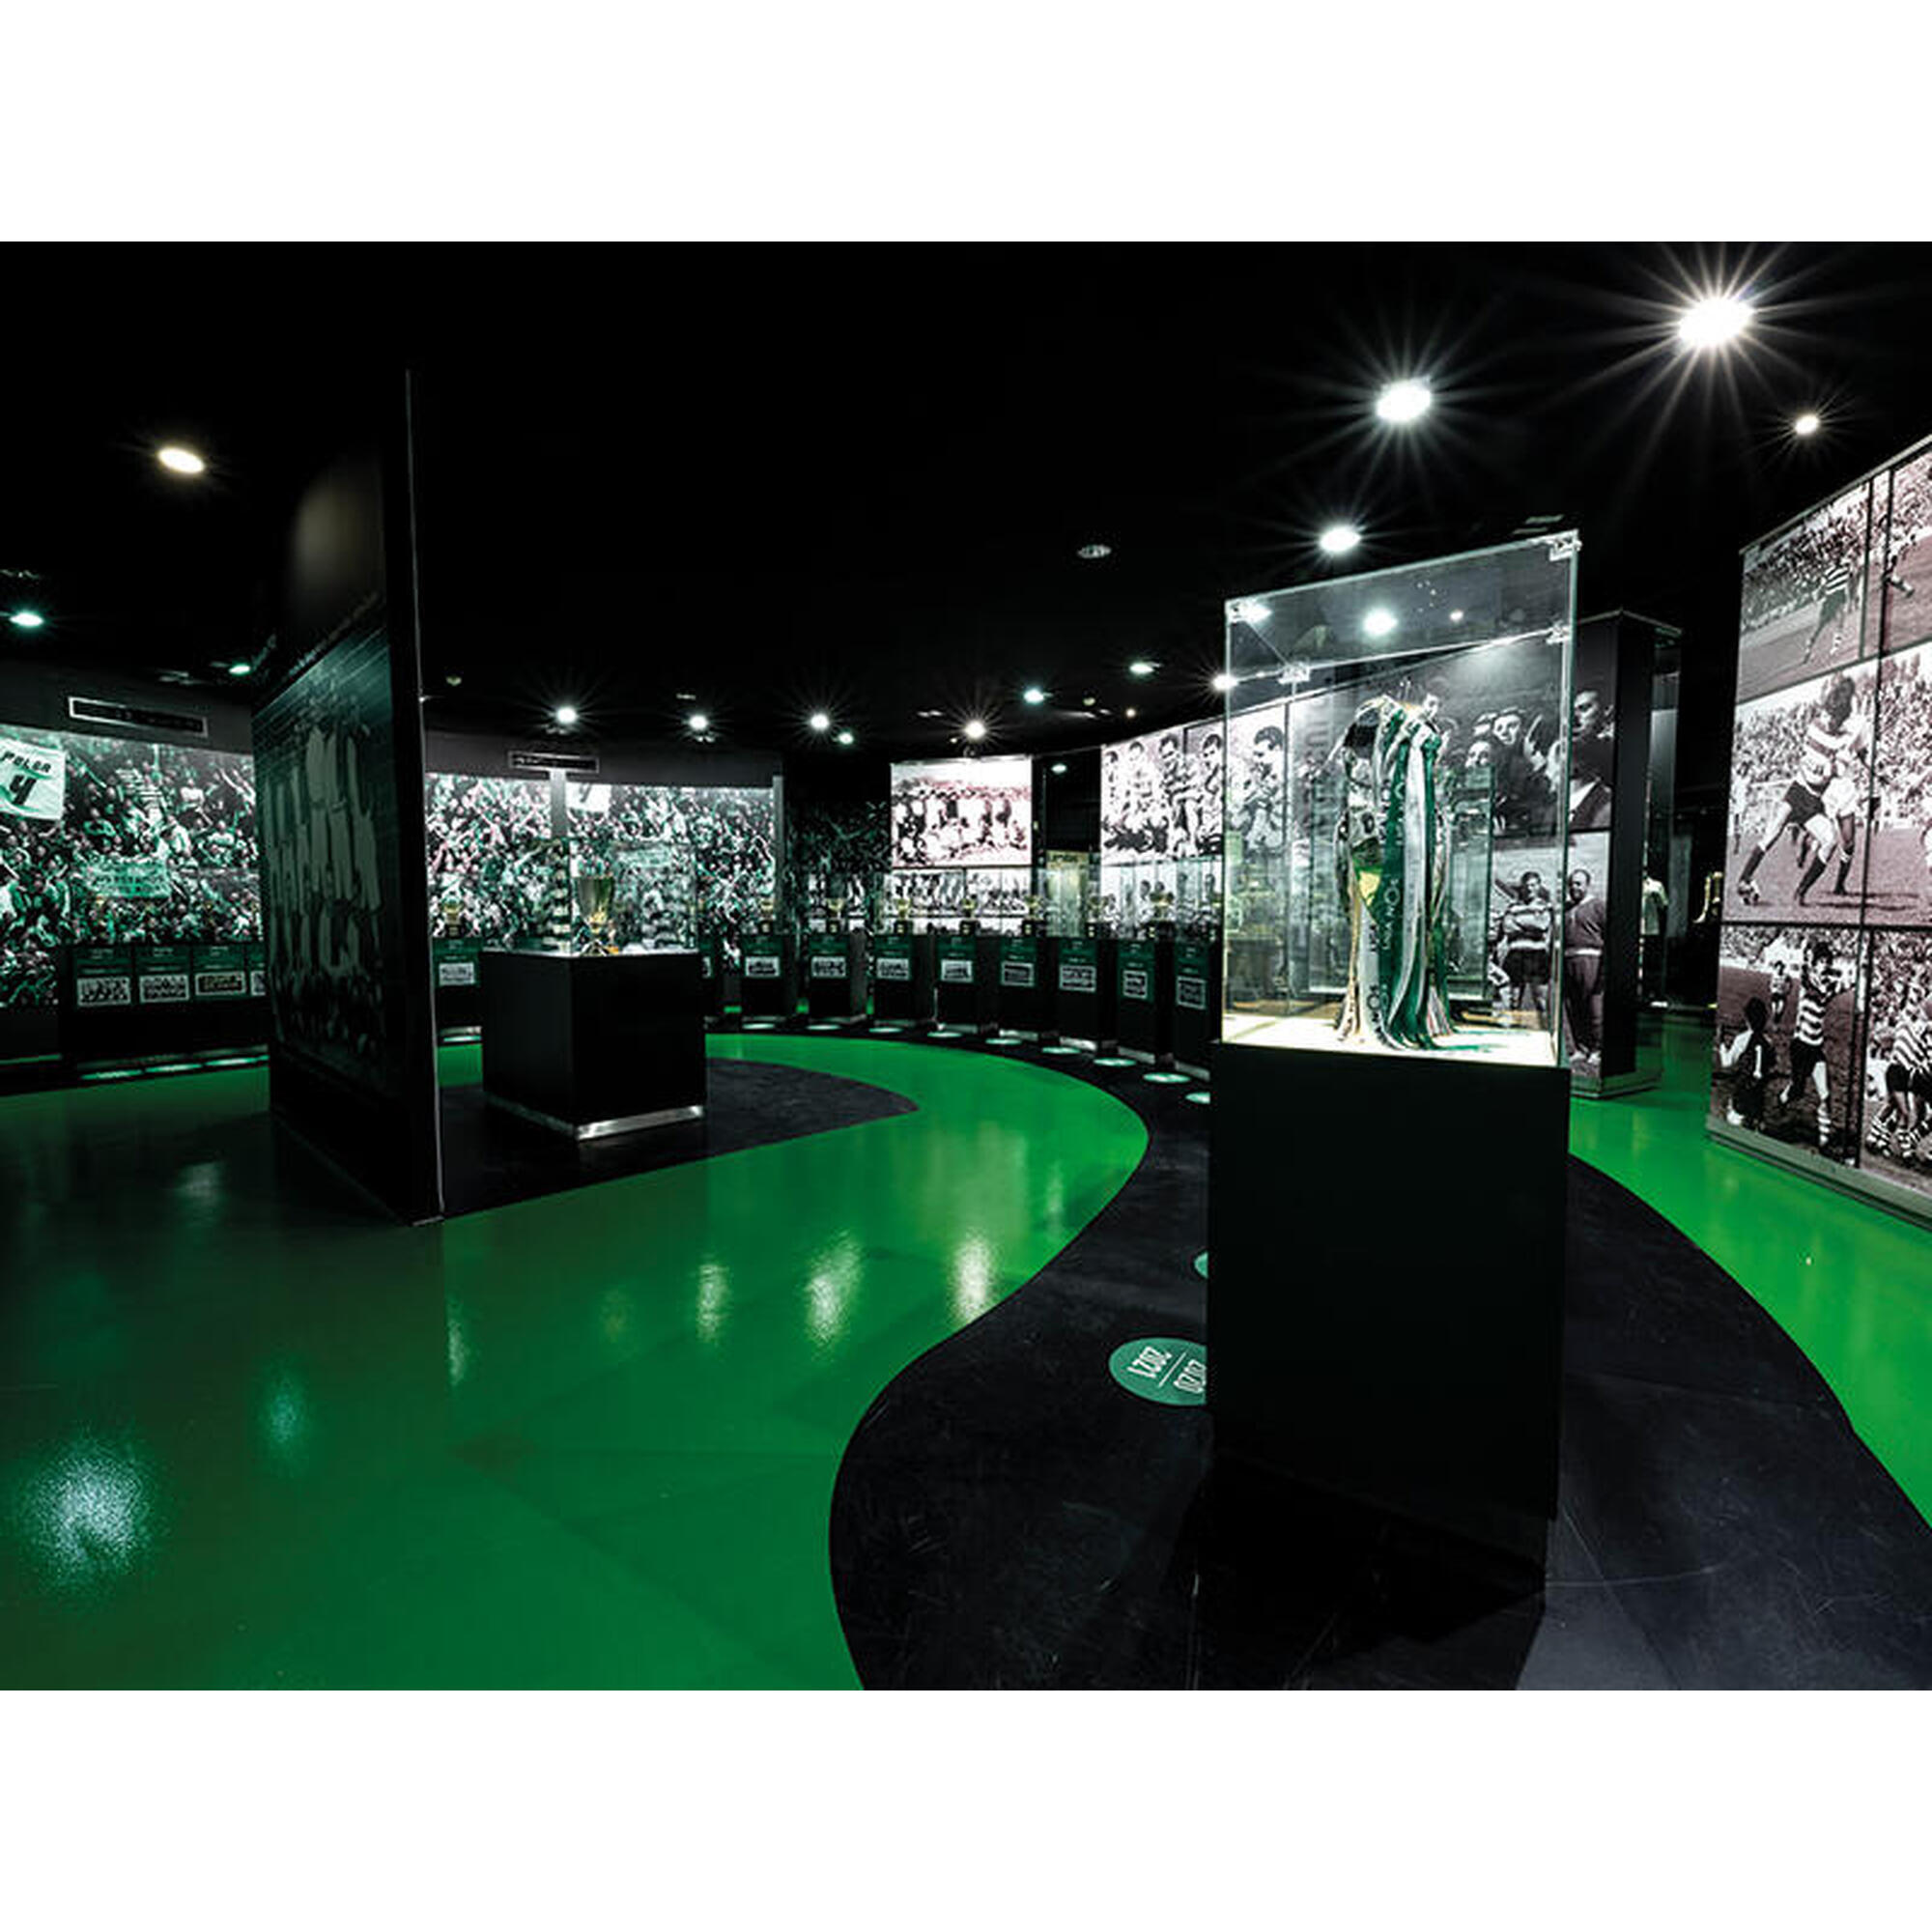 Pack Presente Odisseias - Sporting Clube de Portugal | Visita ao Estádio e Museu